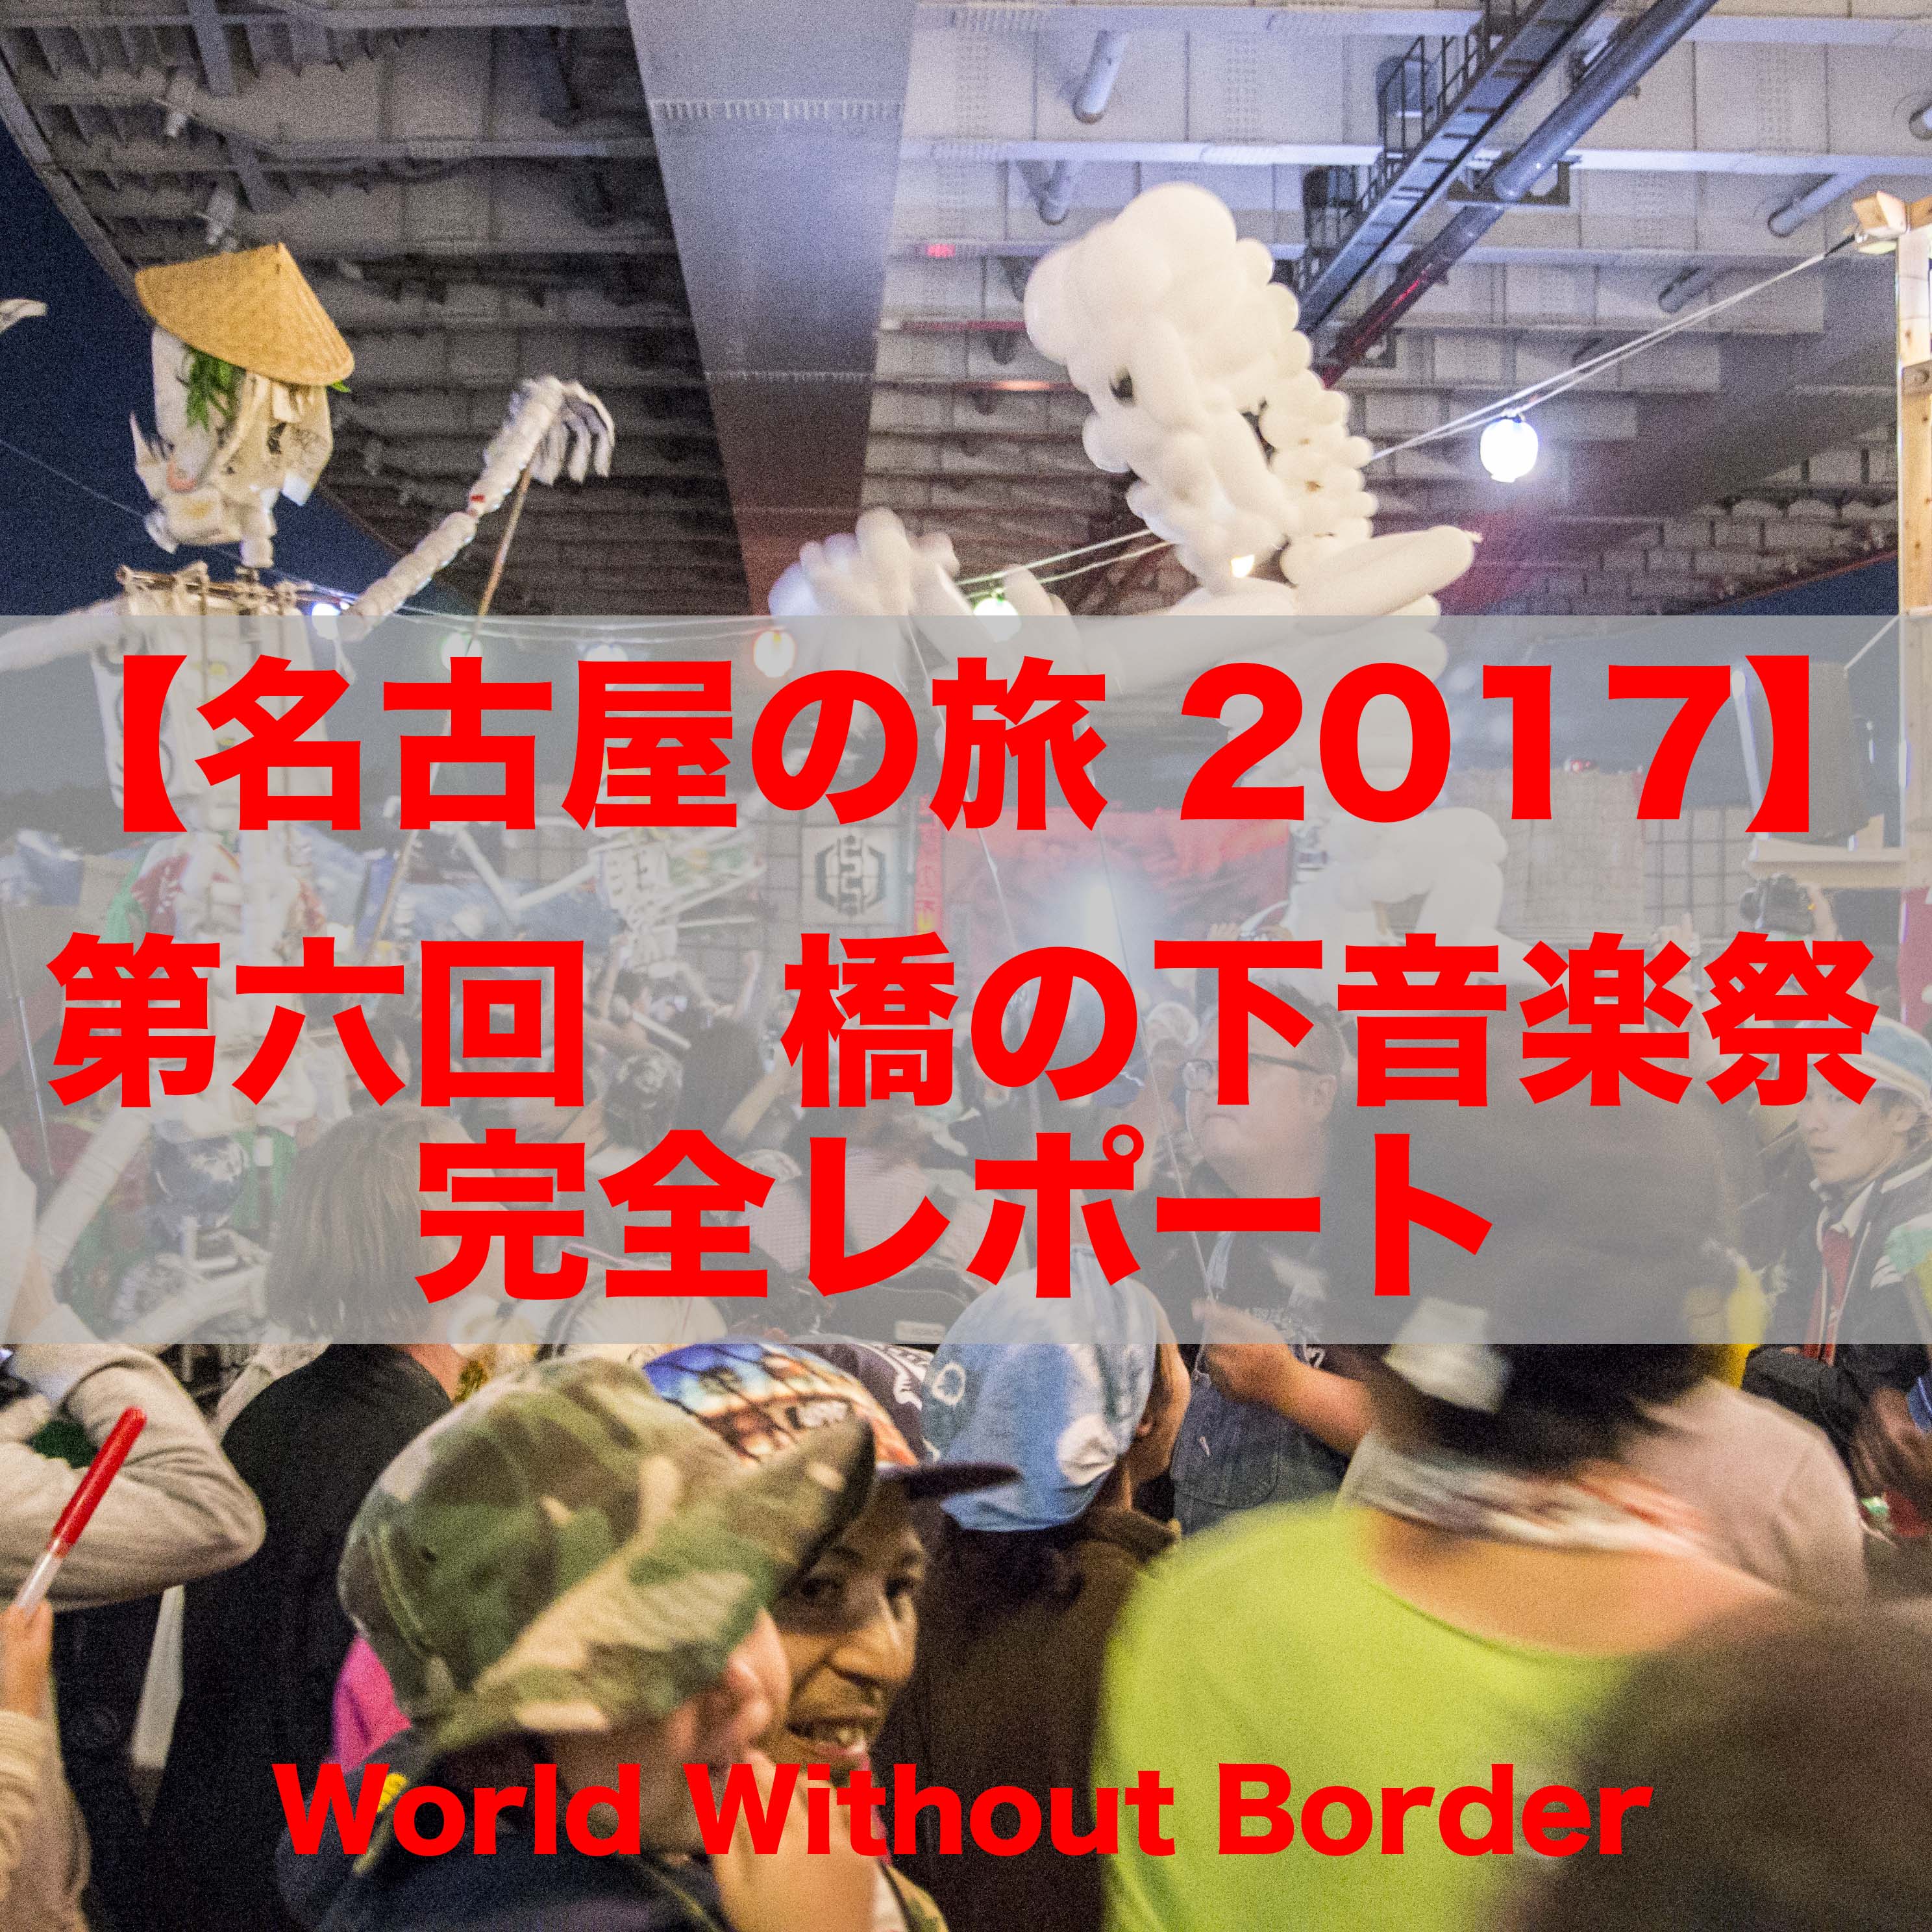 【名古屋の旅 2017】日本の祭り+音楽の融合イベントは唯一無二。 第六回 橋の下音楽祭 2017 レポート